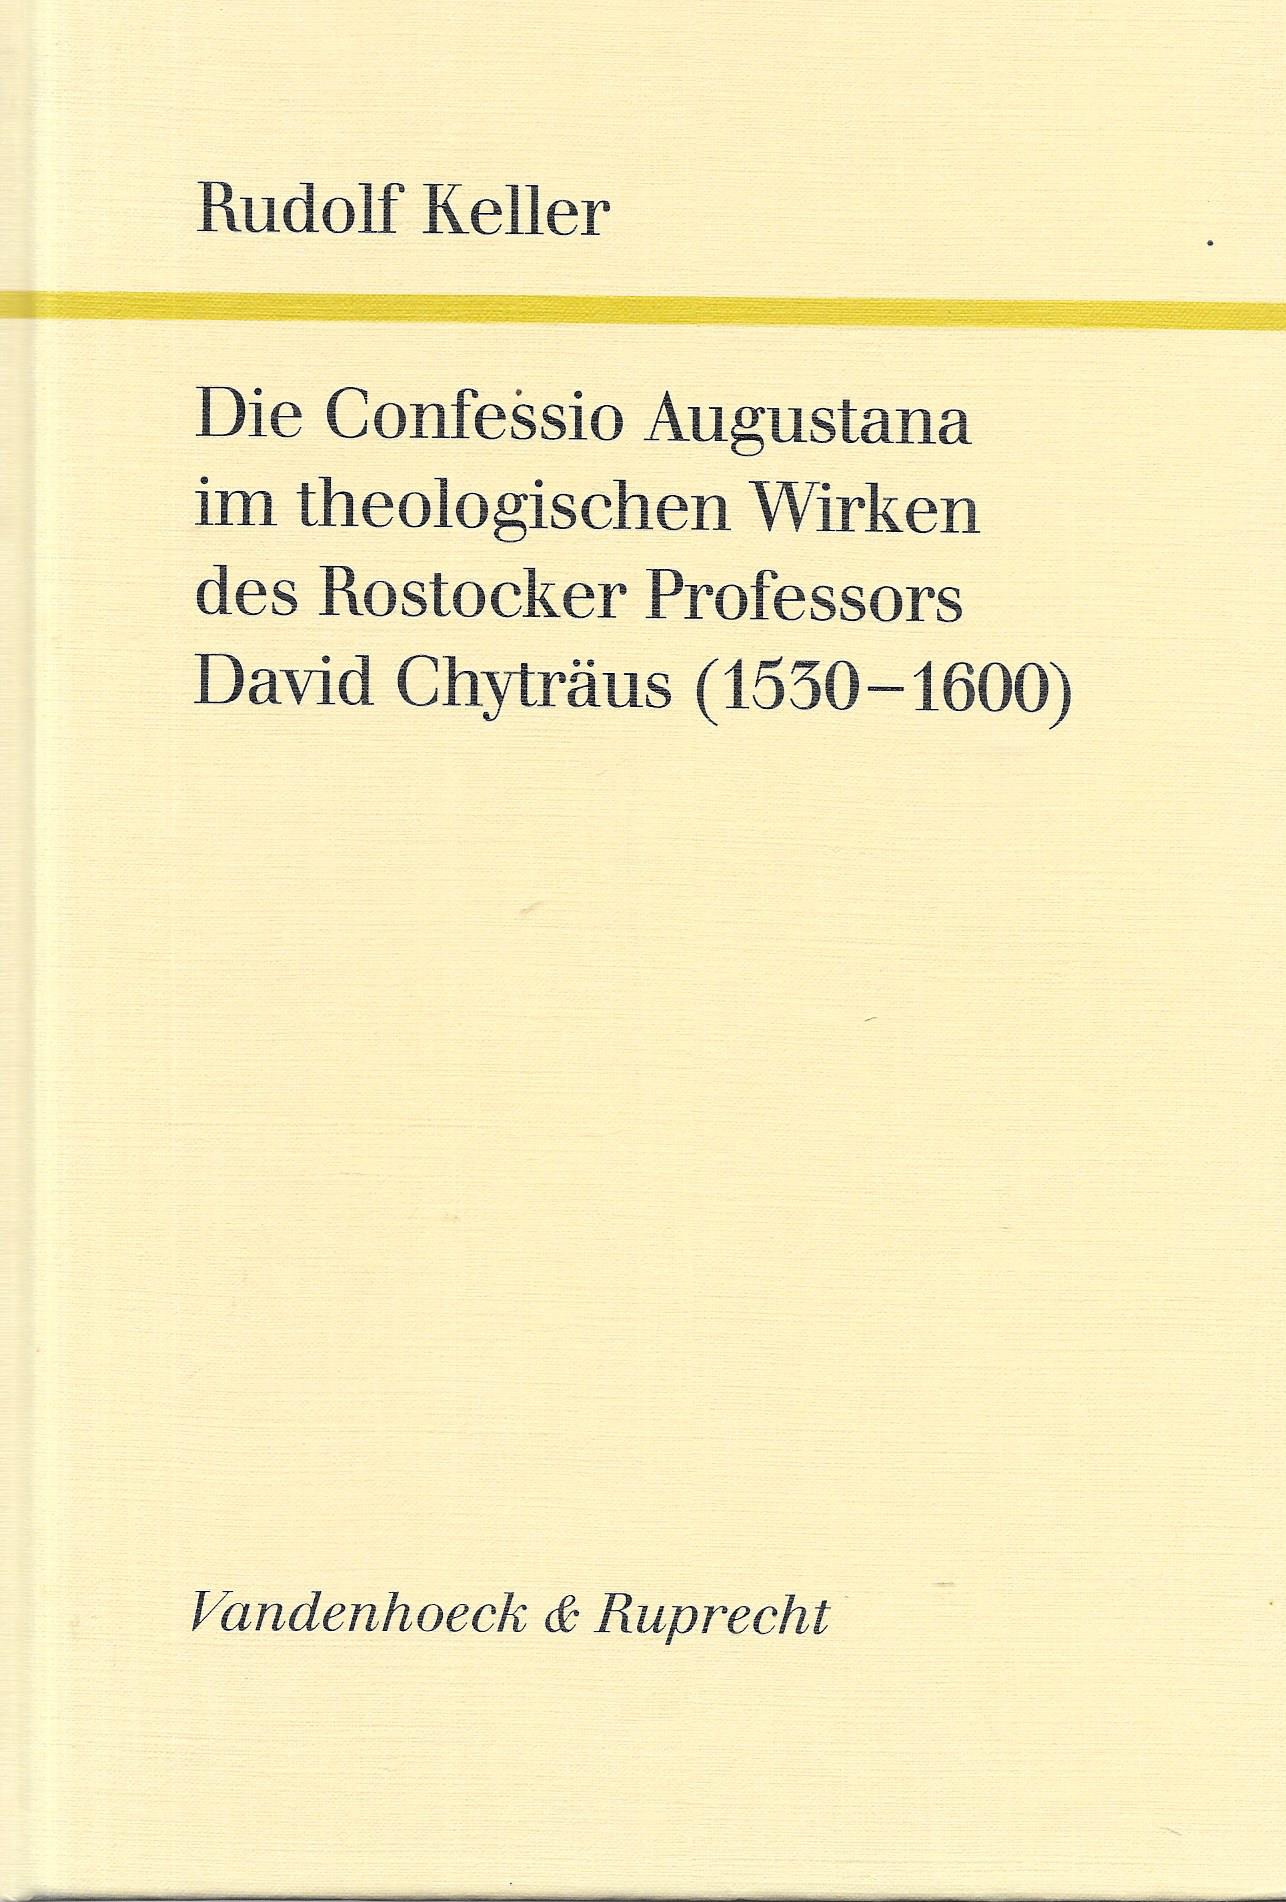 Die Confessio Augustana im theologischen Wirken des Rostocker Professors David Chyträus (1530 - 1600) - Rudolf Keller